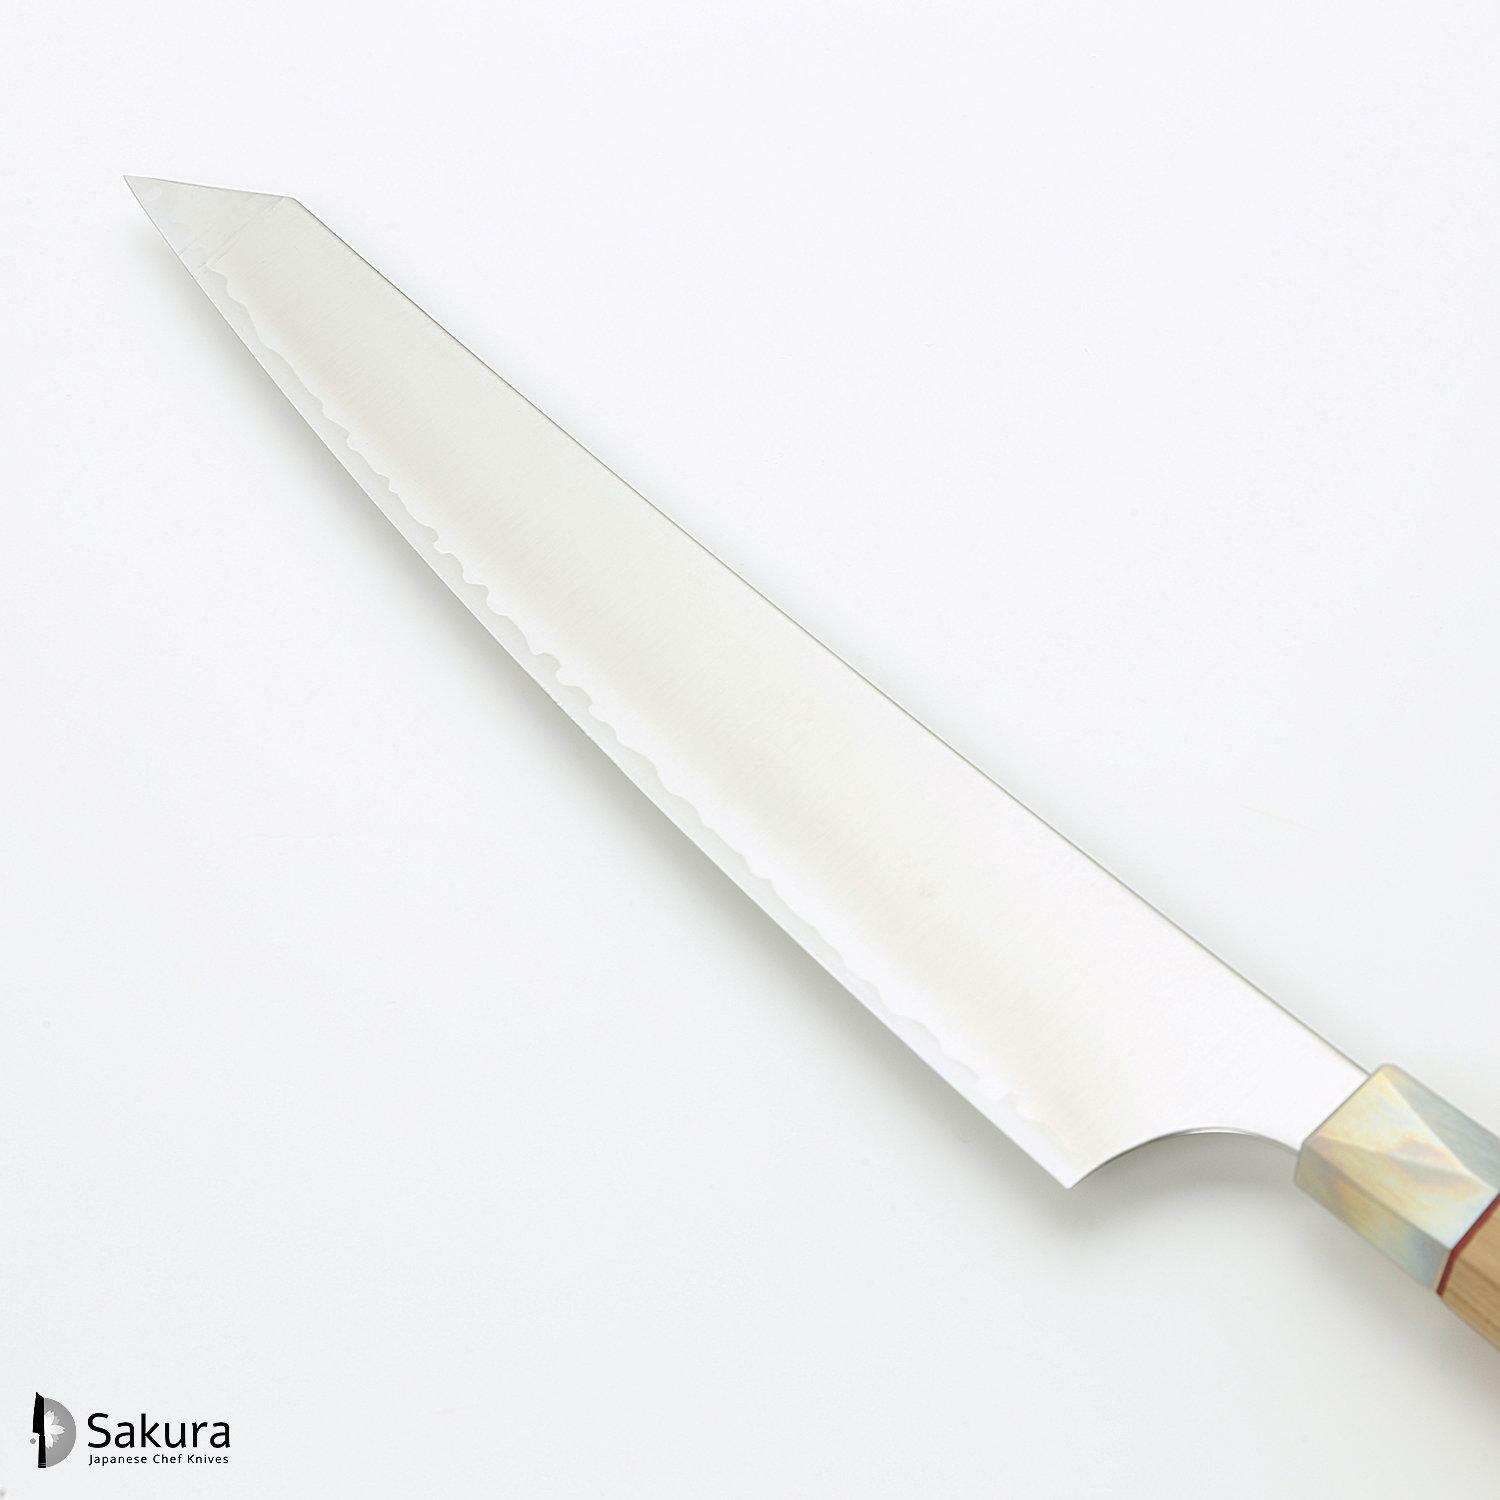 סכין חיתוך ופריסת בשר סוּגִּ’יהִיקִי 270מ״מ מחושלת בעבודת יד 3 שכבות: פלדת פחמן יפנית מתקדמת מסוג Aogami Super עטופה פלדת אל-חלד גימור מט מלוטש מקוסטה זאנמאיי יפן ZBX-5010B (Copy)